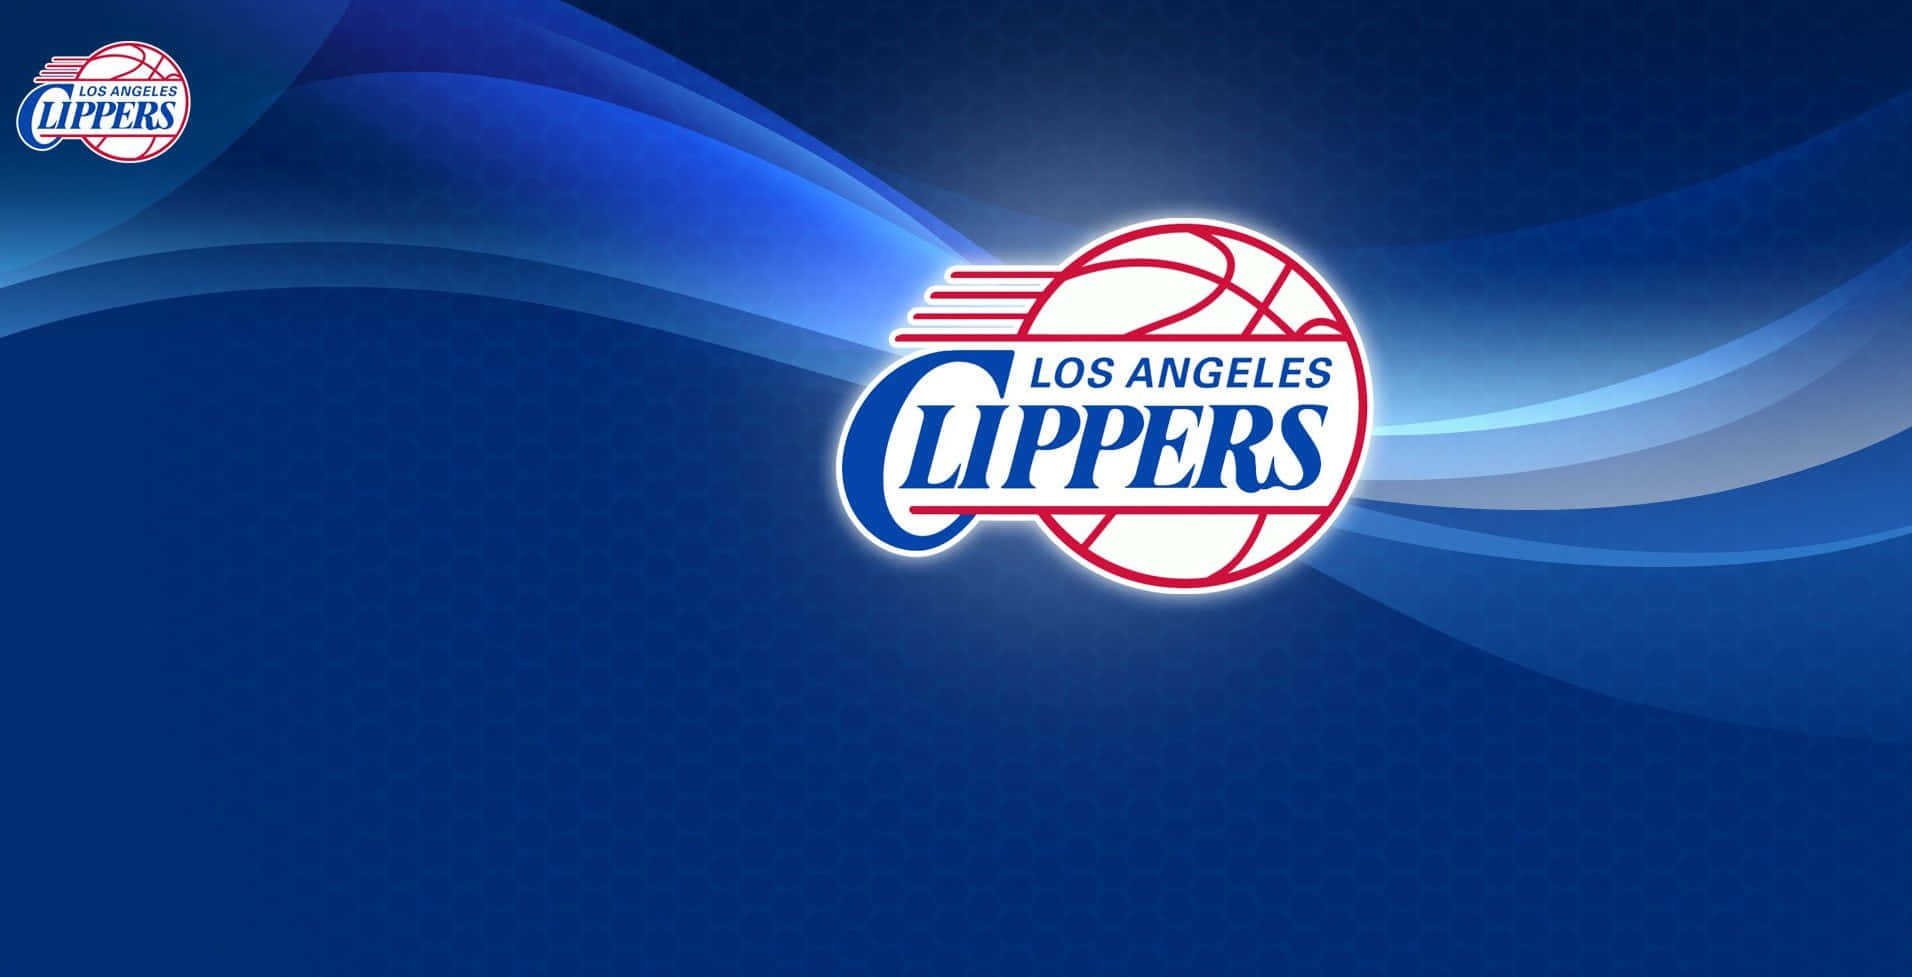 Blauesnba-team-logo Der La Clippers Wallpaper